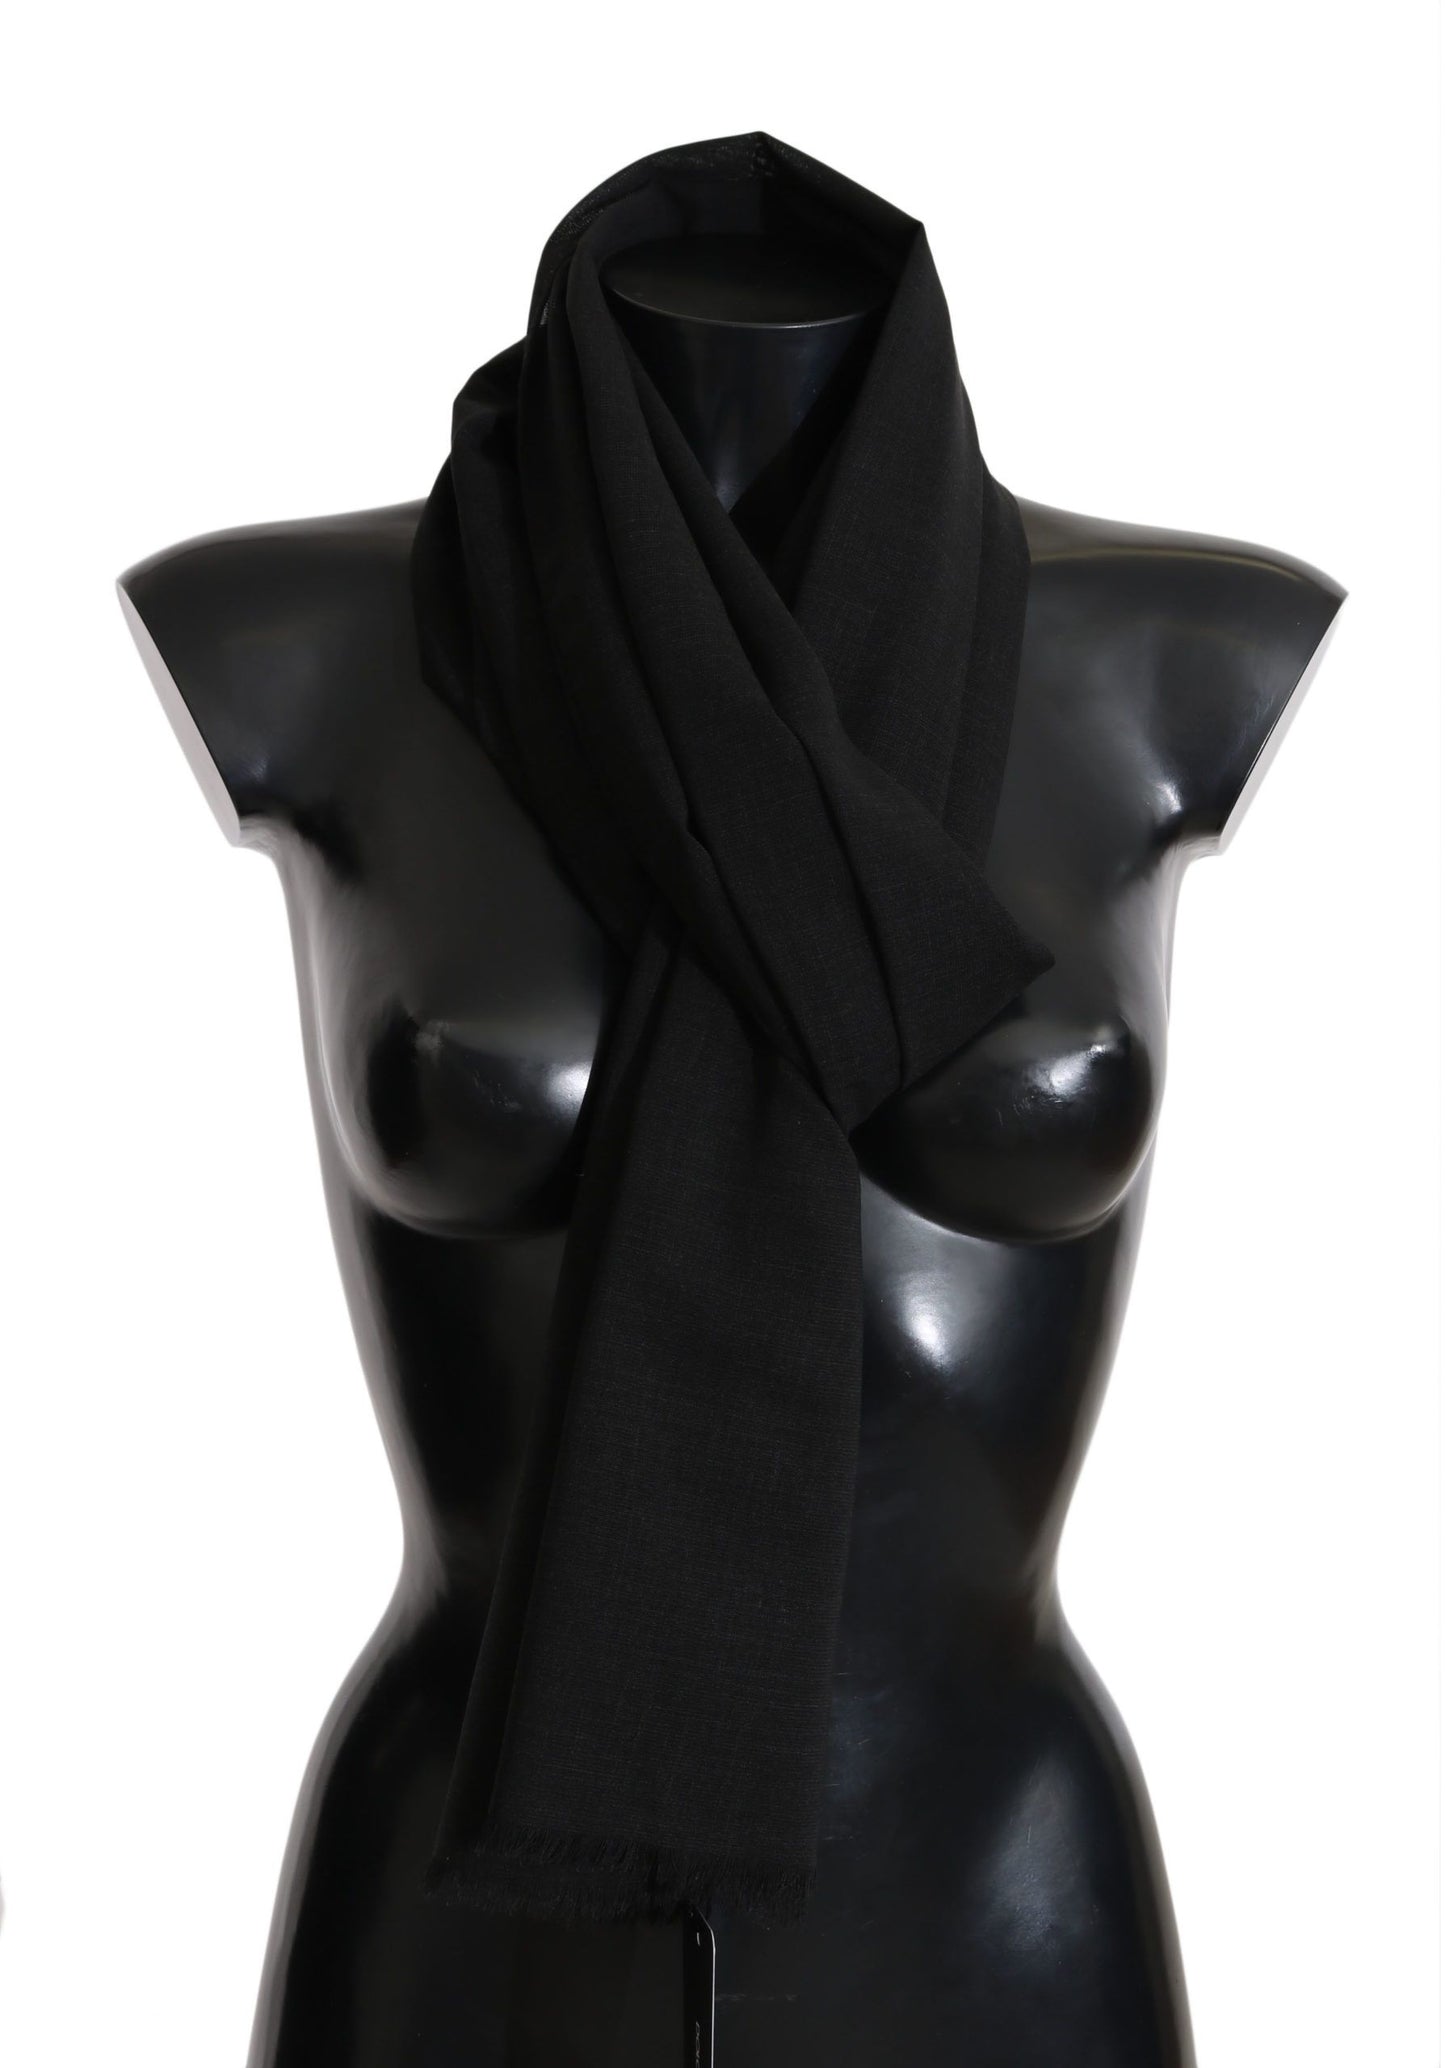 Dolce & Gabbana Solid Black Wool Blend Shawl Wrap 70cm X 200cm Scarf